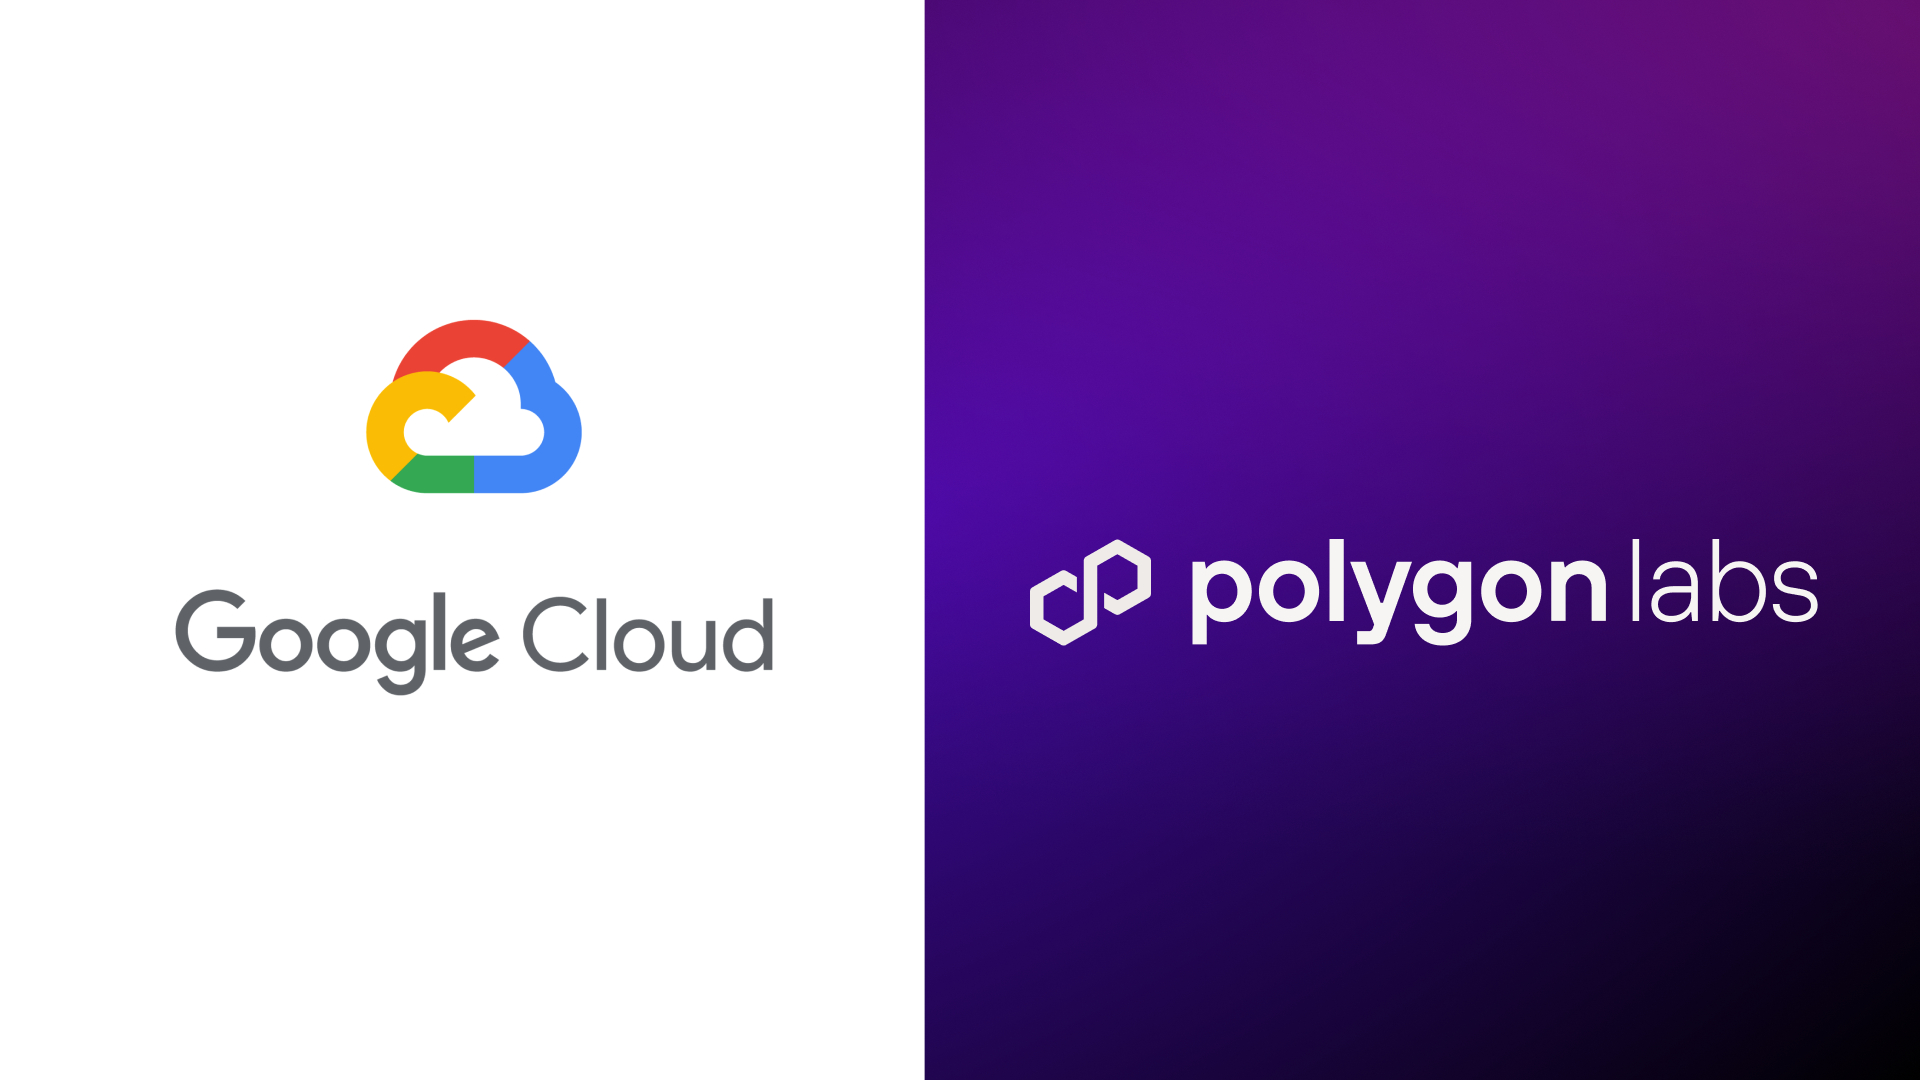 Google Cloud soutient Polygon pour développer son écosystème